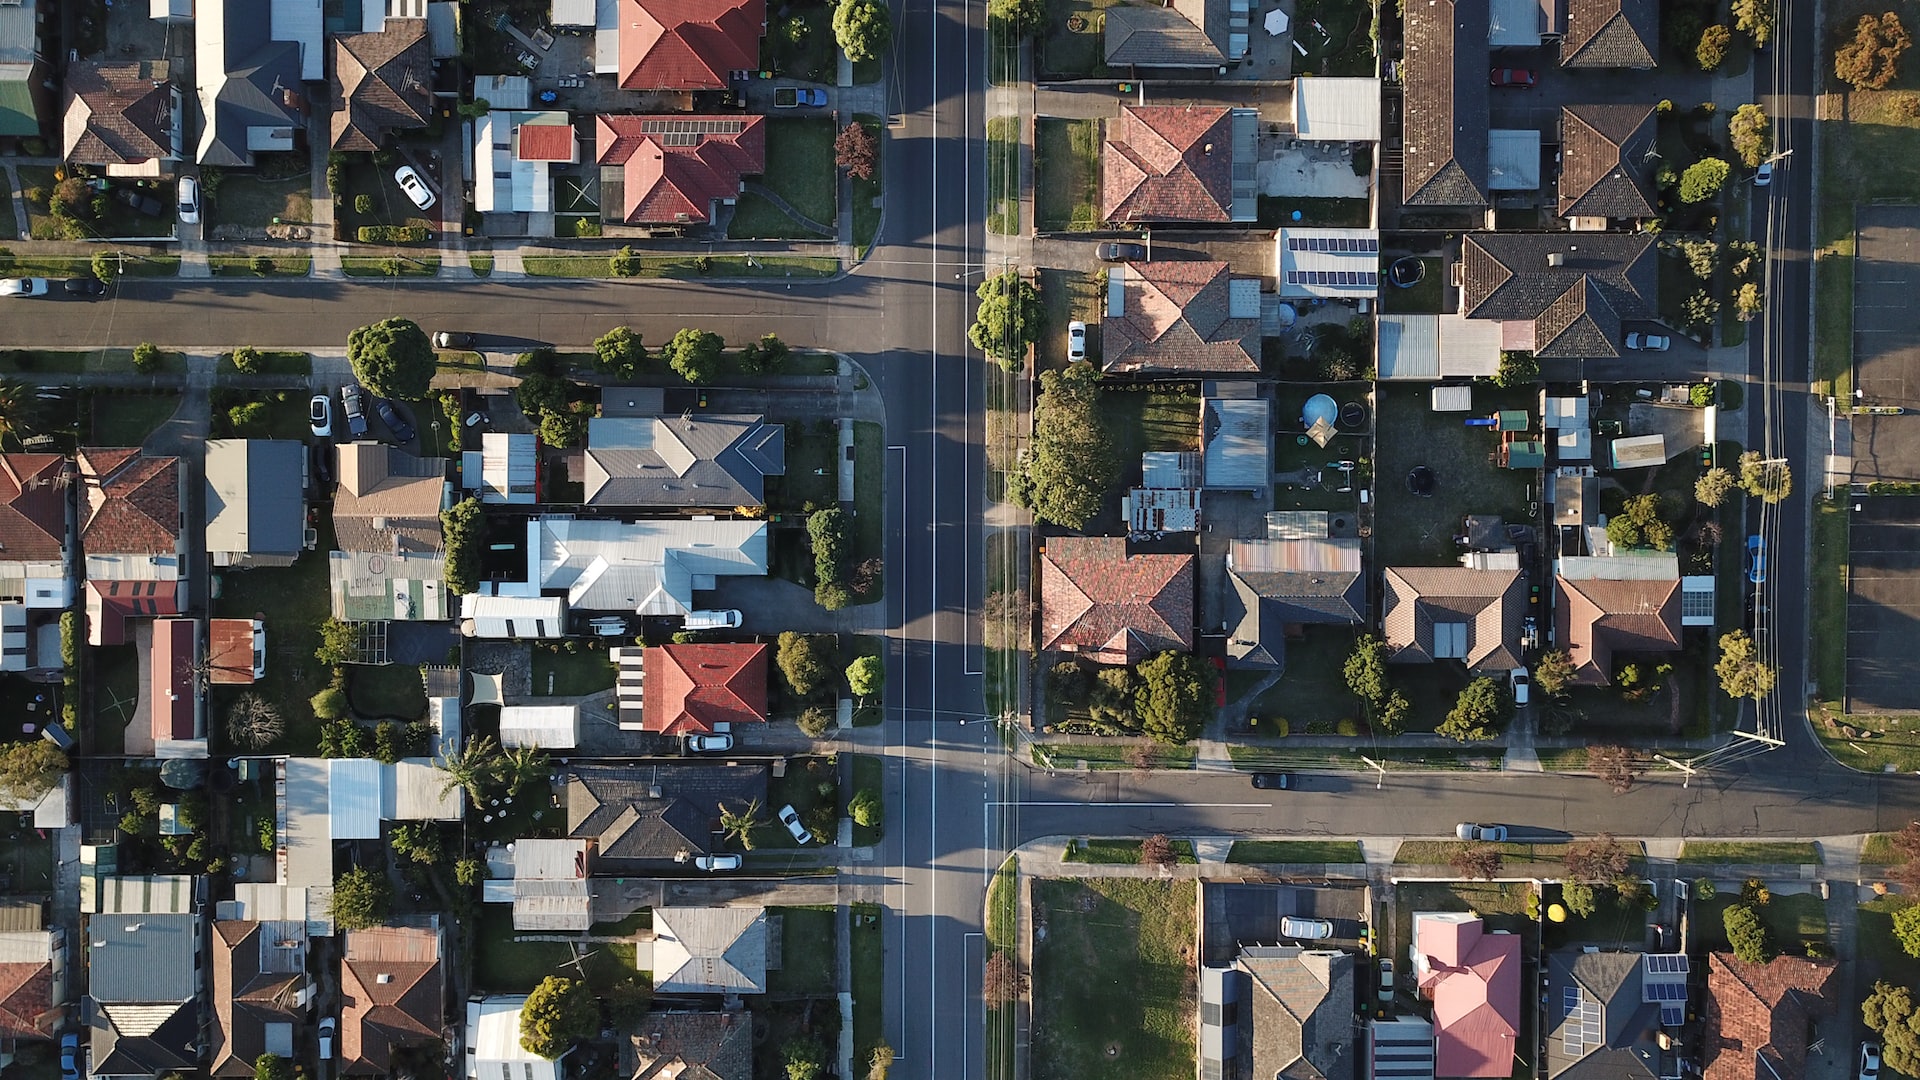 Aerial view of neighbourhood of houses in UK